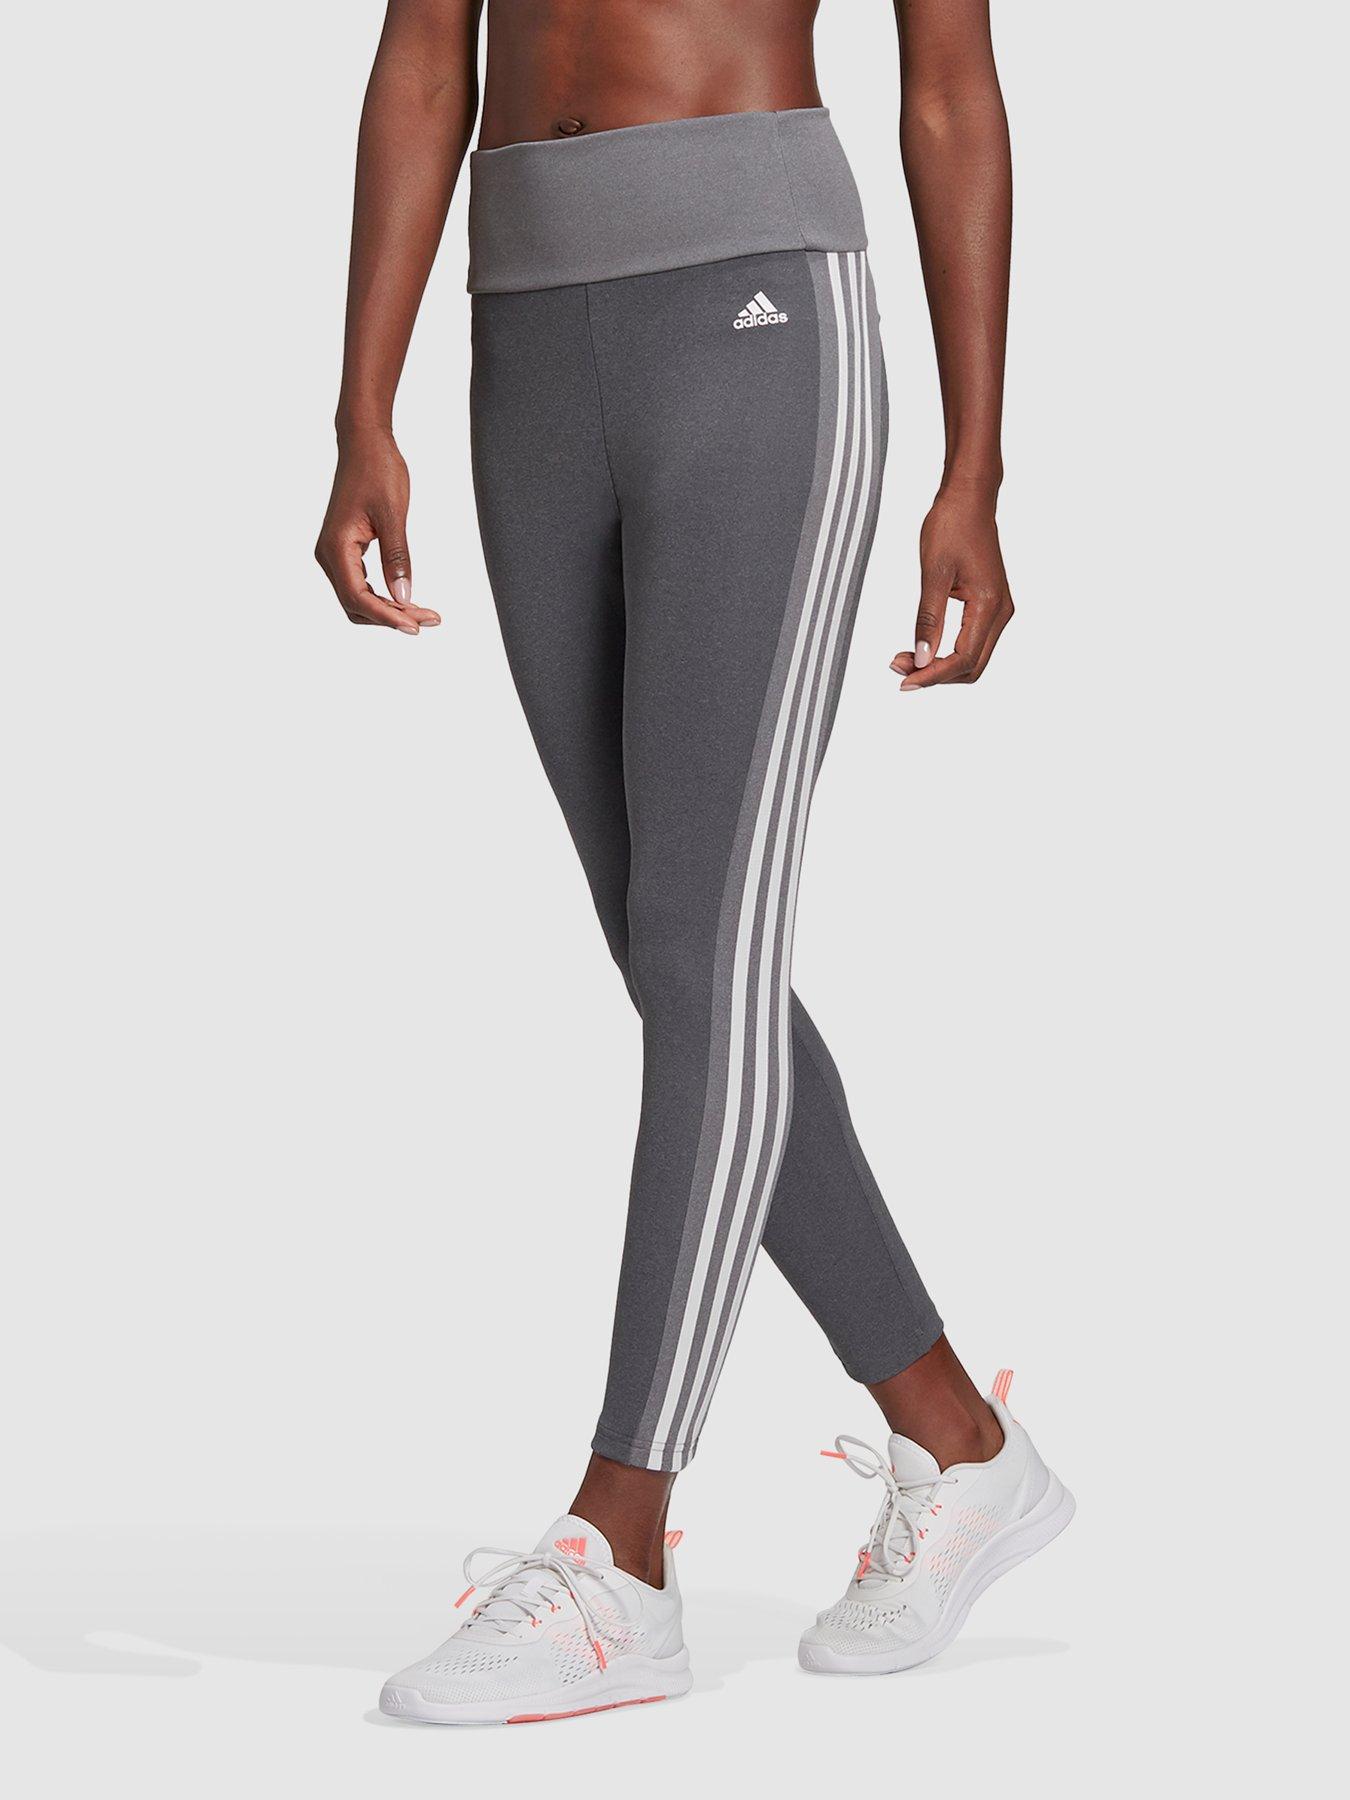 adidas 3 Stripes Leggings - Grey | adidas Ireland